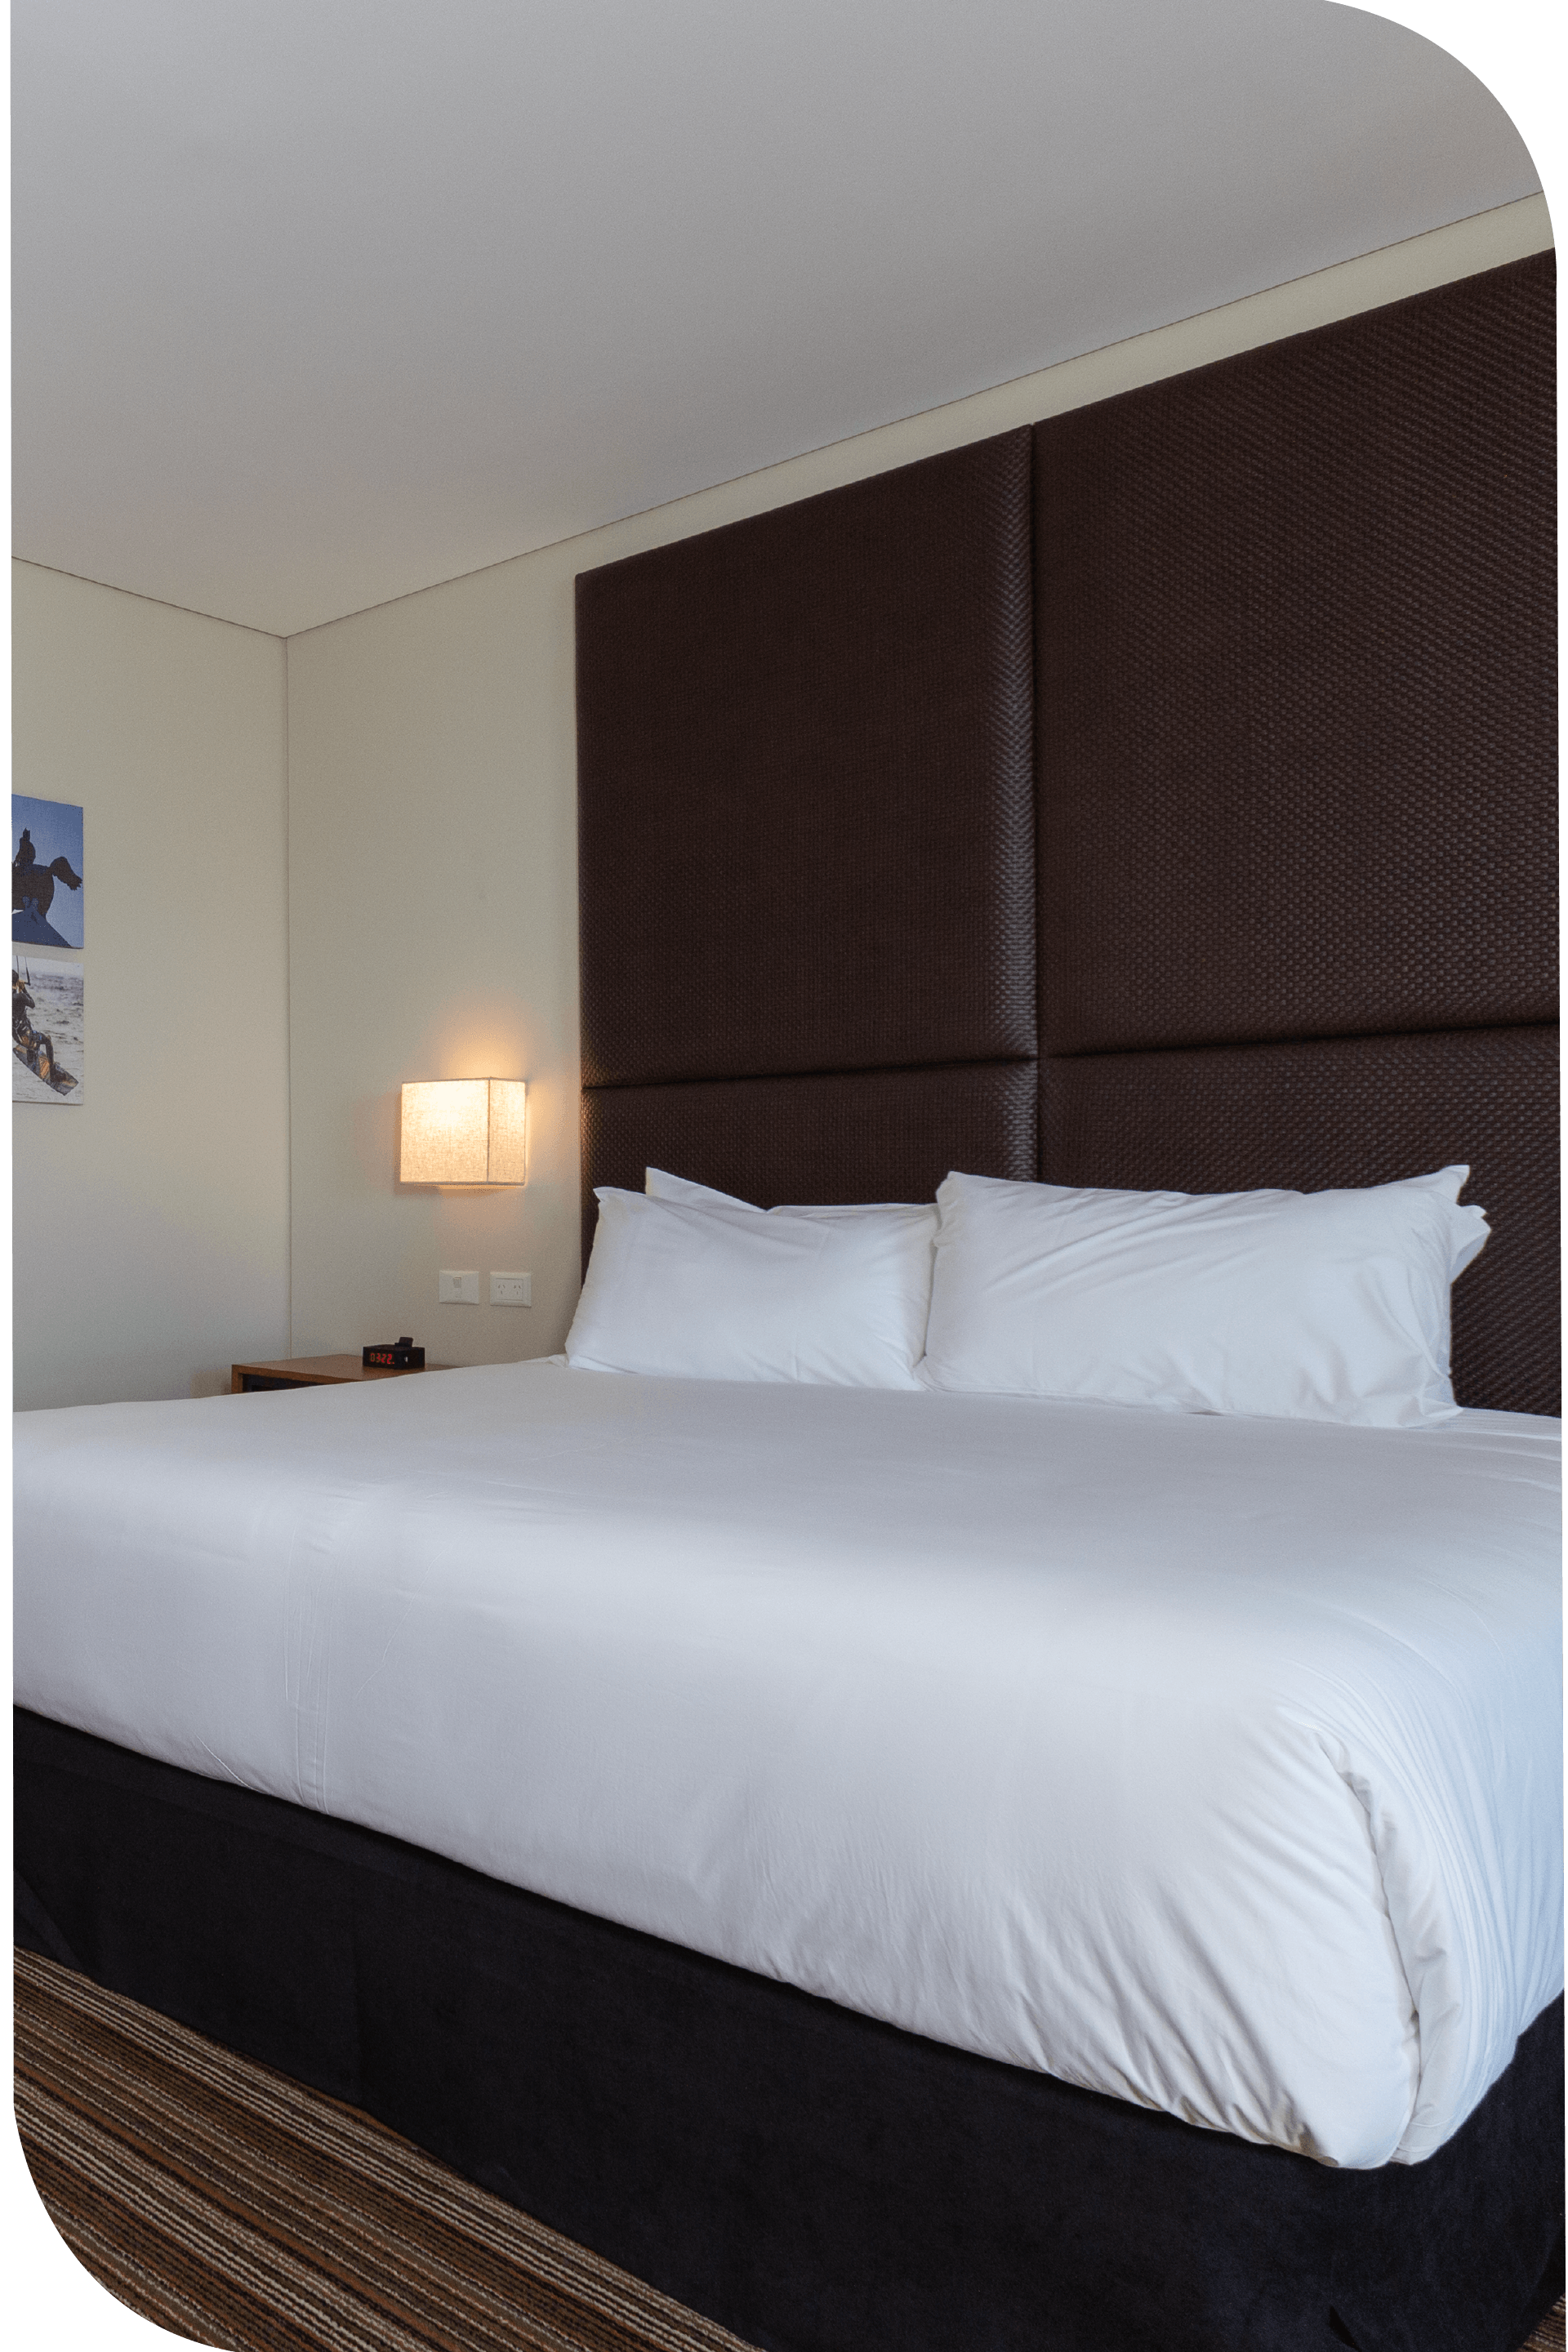 Una habitación de hotel con una cama king size y una cabecera marrón.